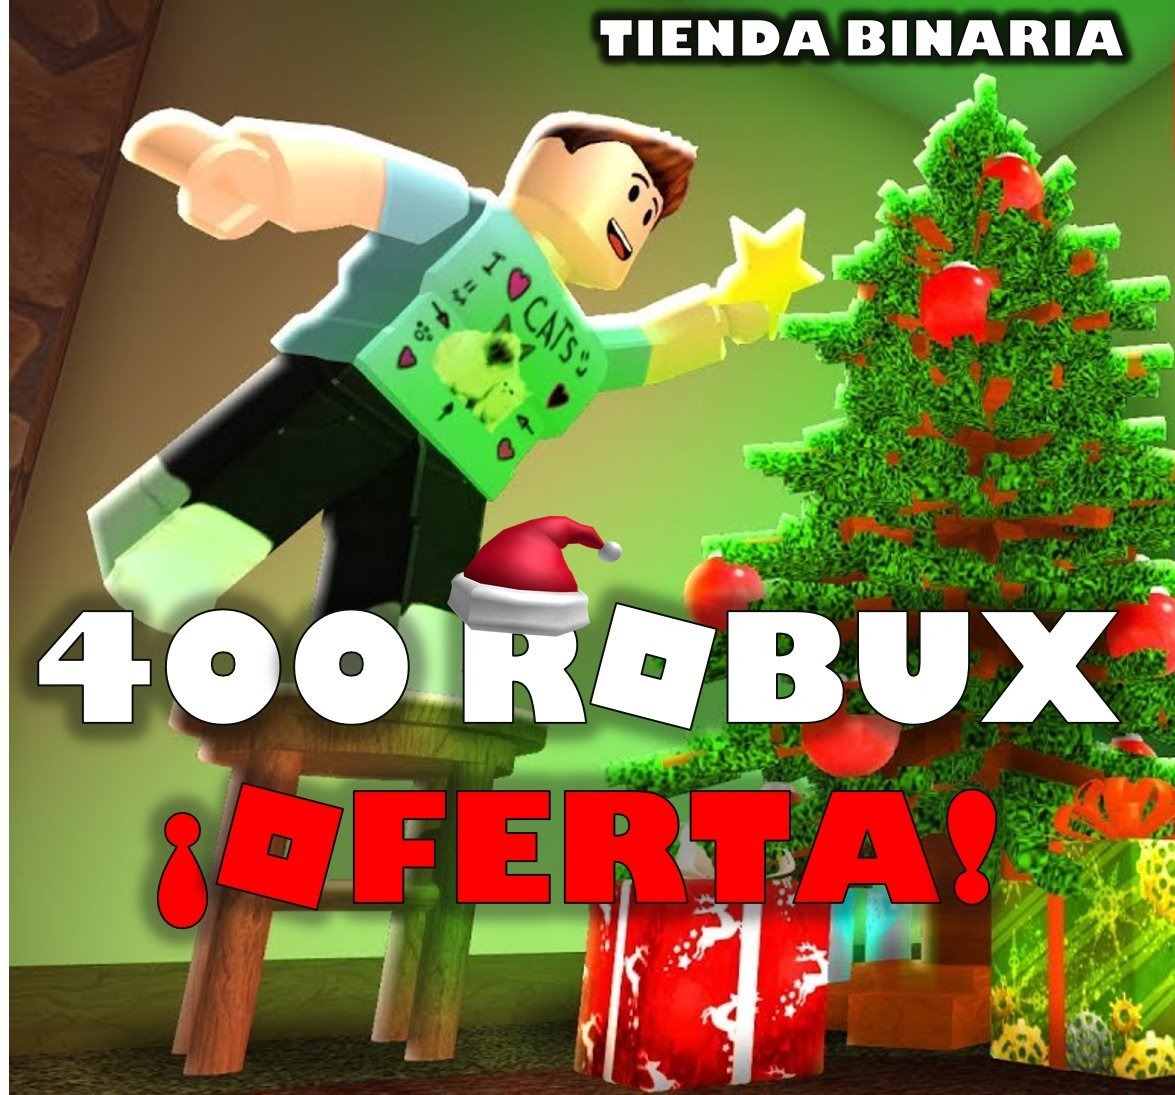 Blox Amino Para Roblox En Espanol Apk App Free Download Tomwhite2010 Com - youtuber jugando roblox roblox robux image